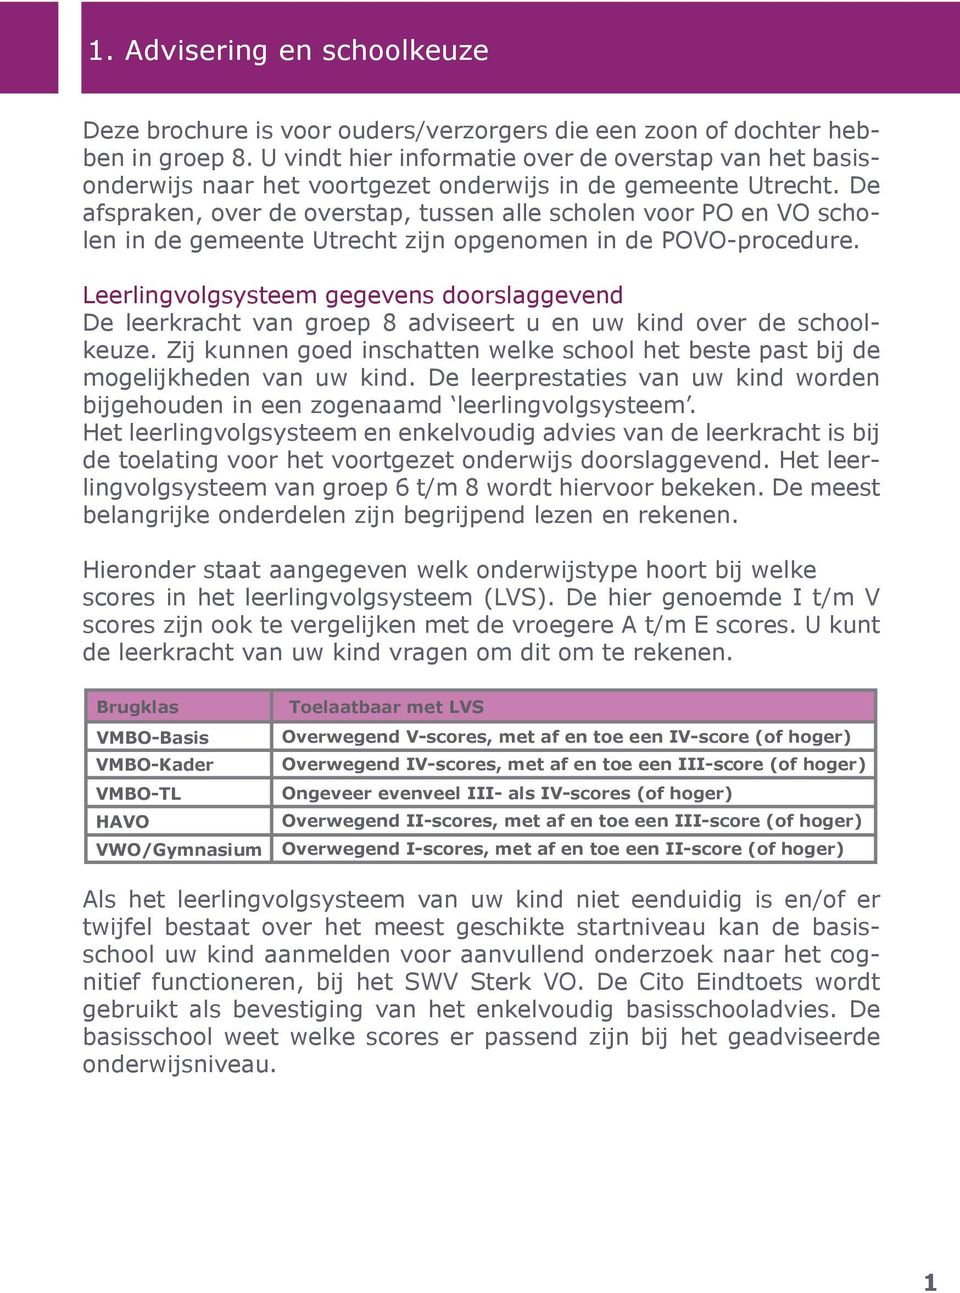 De afspraken, over de overstap, tussen alle scholen voor PO en VO scholen in de gemeente Utrecht zijn opgenomen in de POVO-procedure.